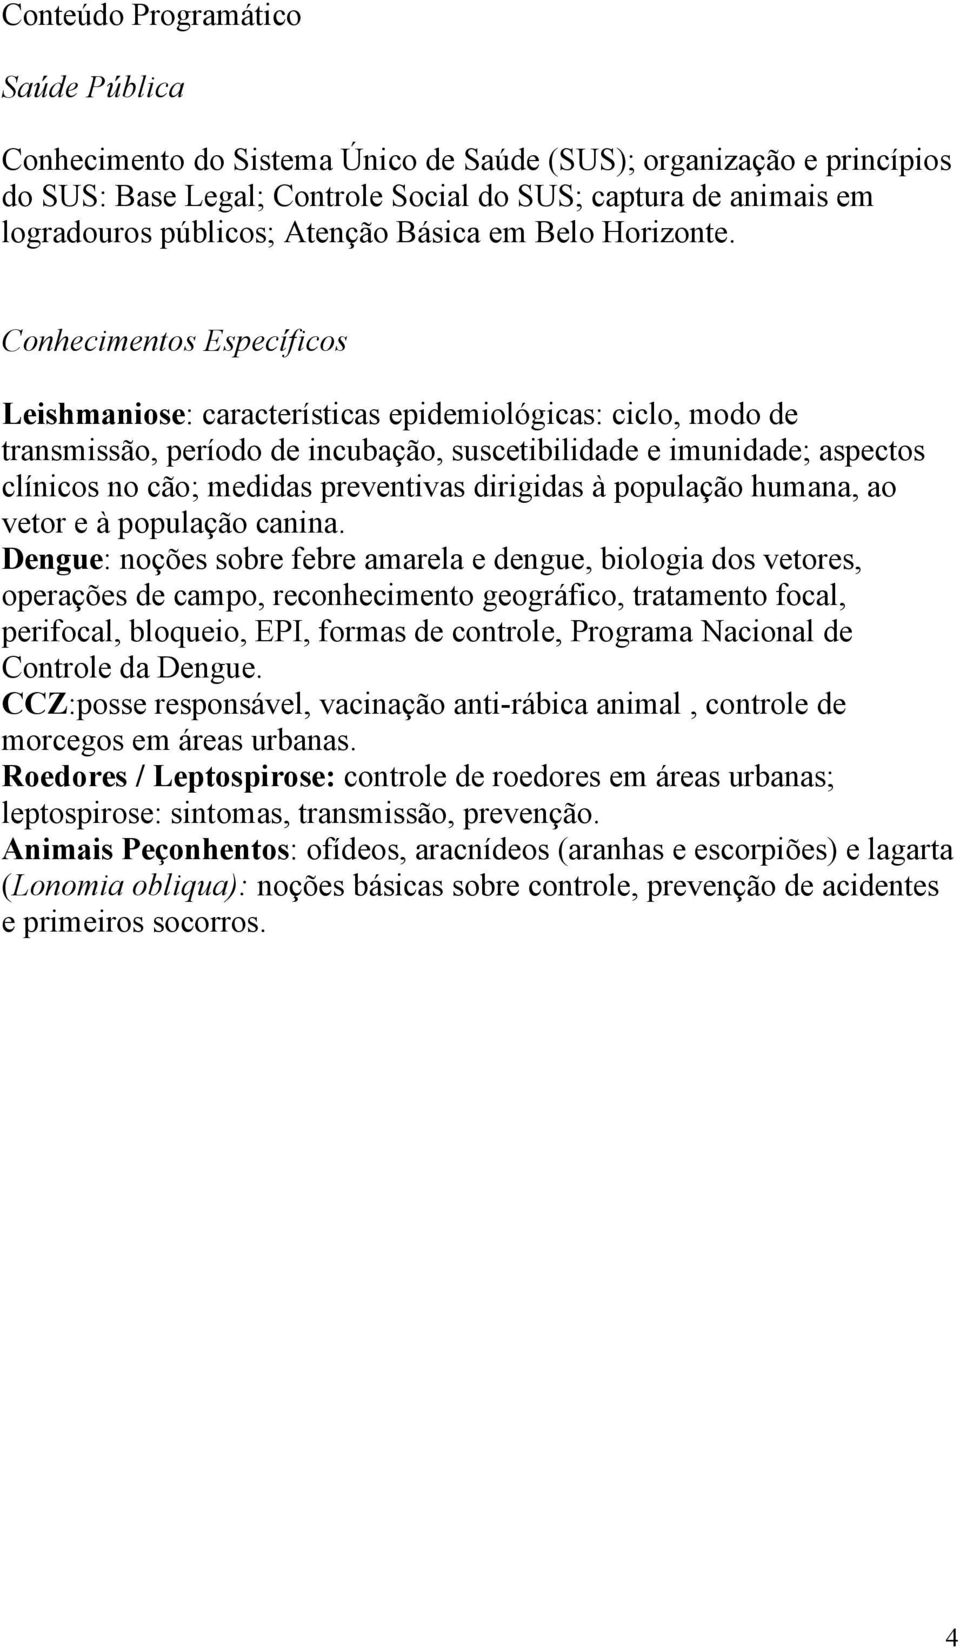 Conhecimentos Específicos Leishmaniose: características epidemiológicas: ciclo, modo de transmissão, período de incubação, suscetibilidade e imunidade; aspectos clínicos no cão; medidas preventivas